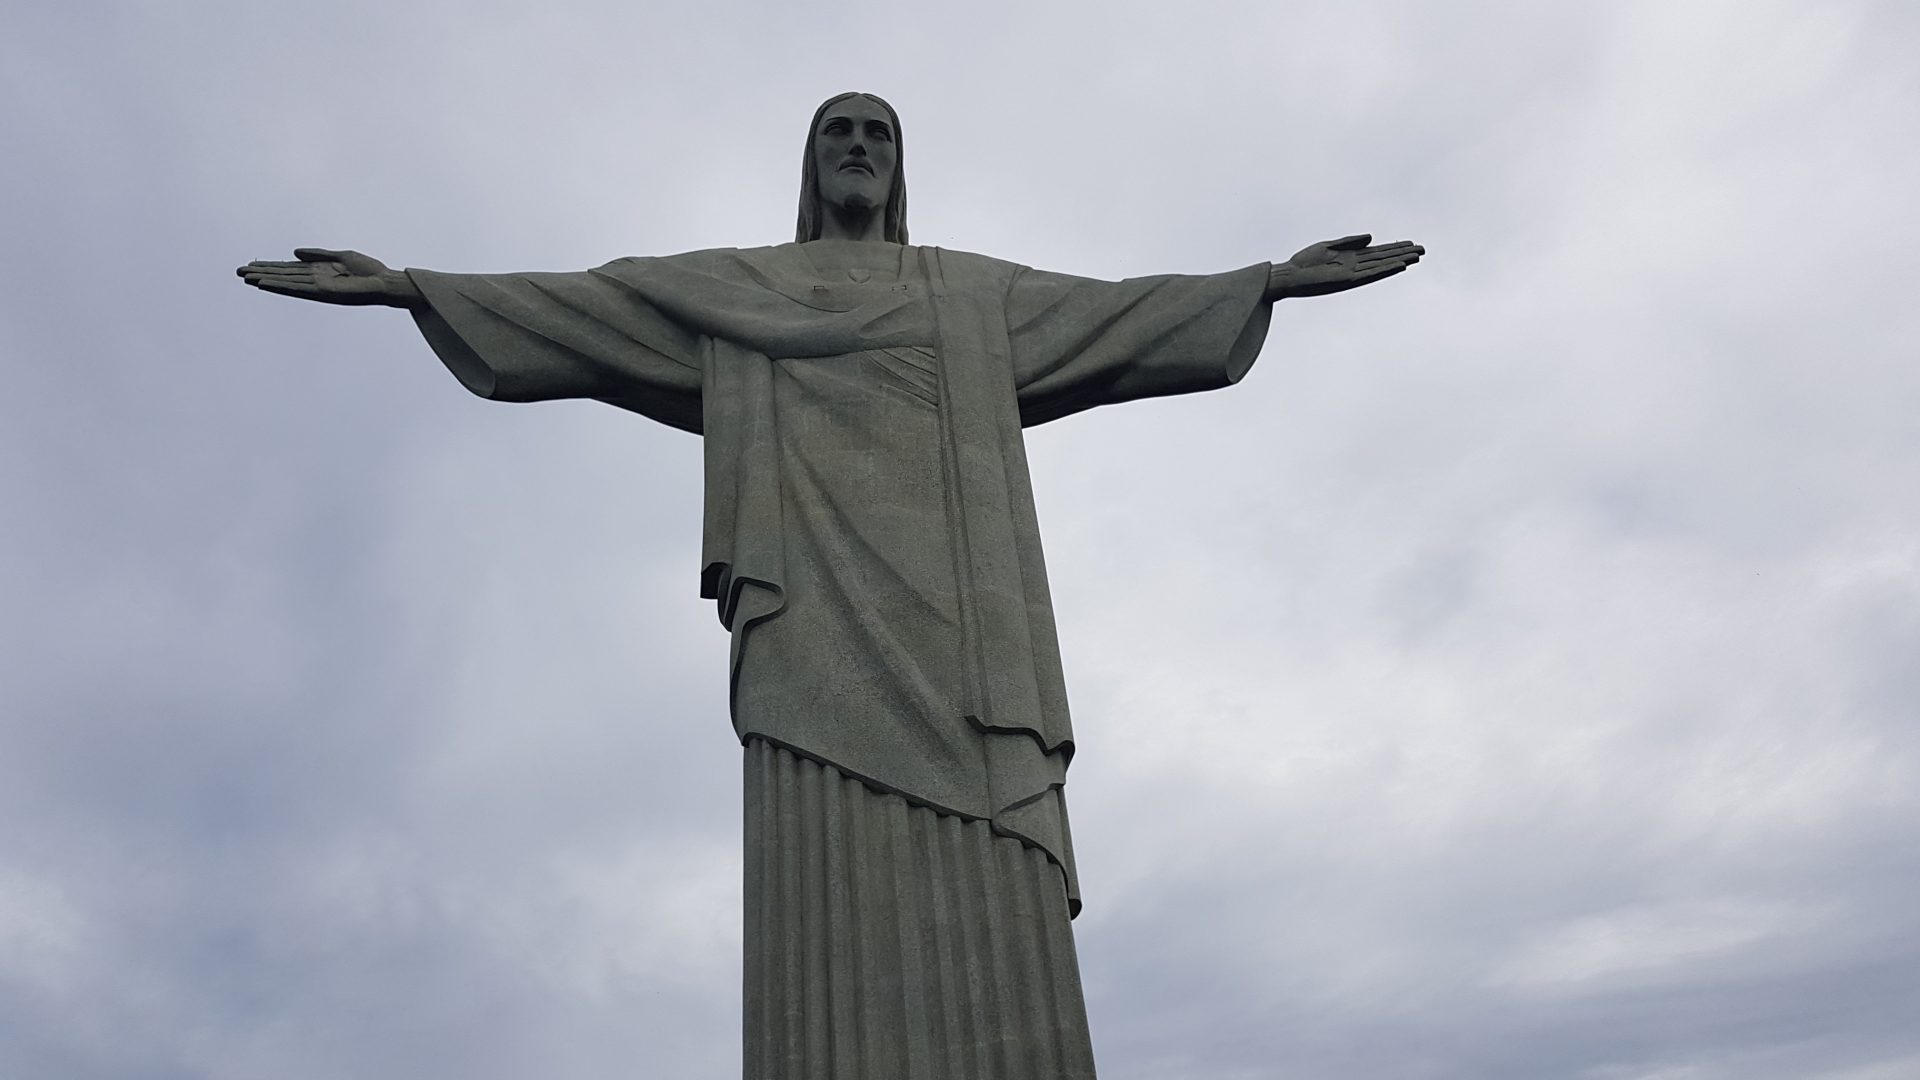 Reise Tipps Sehenswürdigkeiten Rio de Janeiro Highlights Brasilien Rio gefährlich